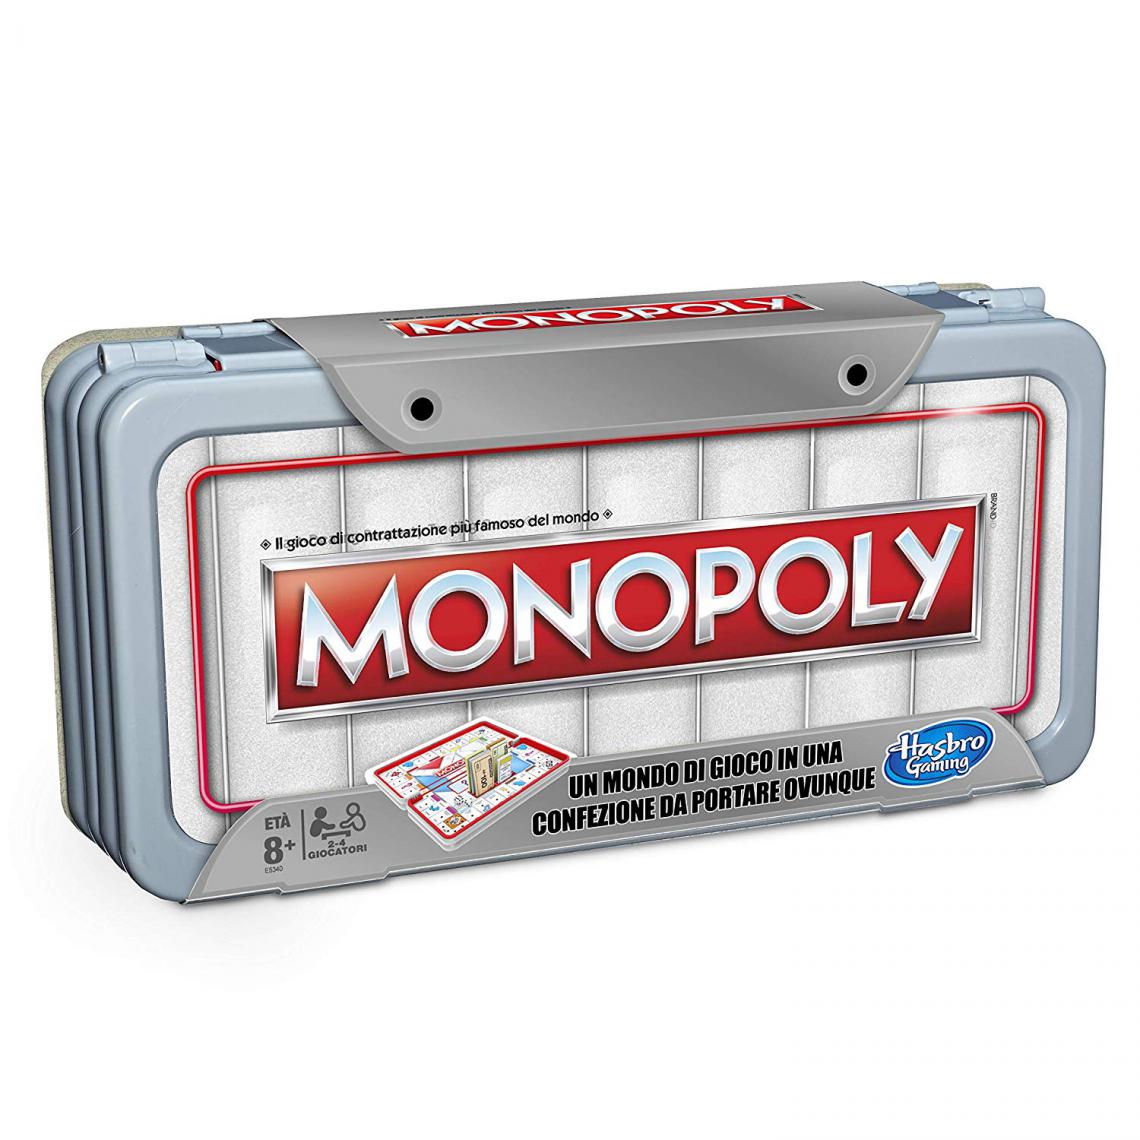 Inconnu - Monopoly Road Trip Monopoly, Multicolore - Jeux d'adresse